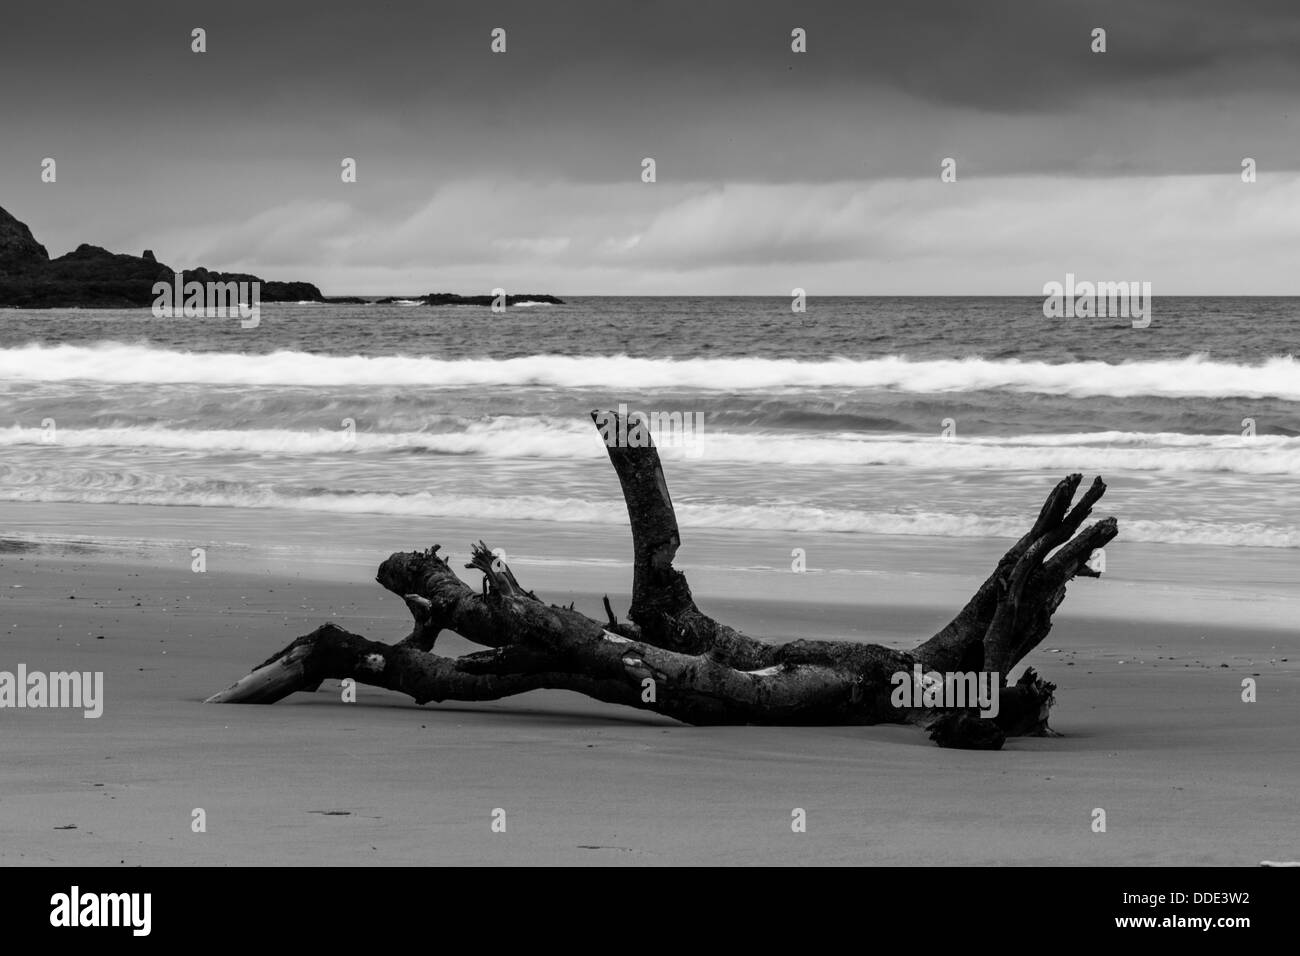 Treibholz am North Antrim Strand ähnelt einer schwimmen oder liegen humanoiden Figur. Schwarz-Weiß-Konvertierung Stockfoto